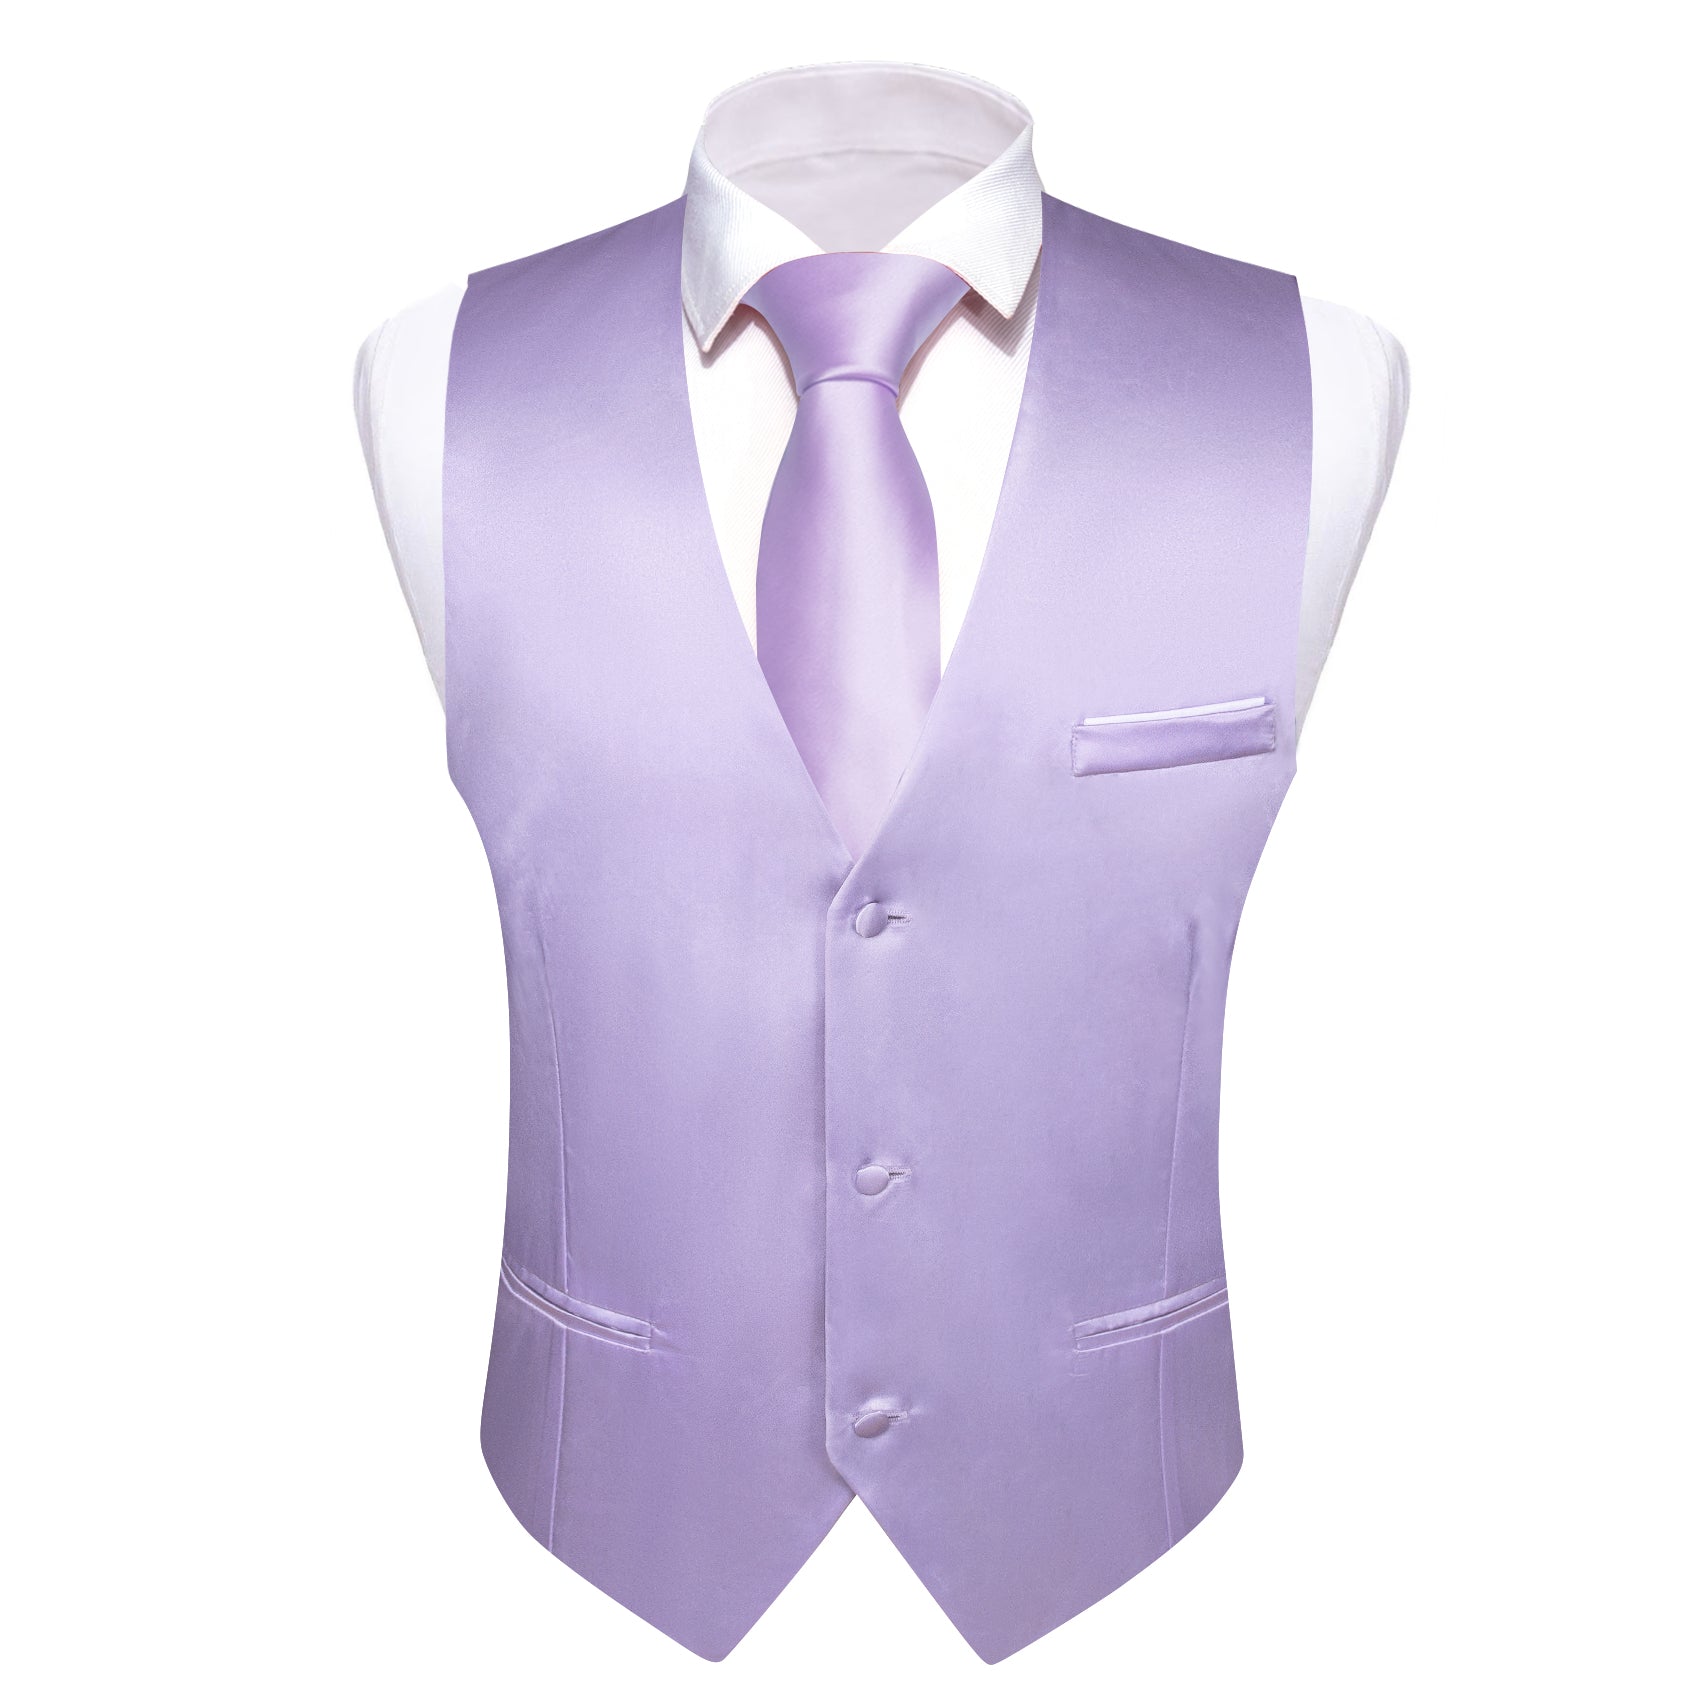 Barry Wang Suit Vest Men's Purple Solid Silk Waistcoat Vest for Party